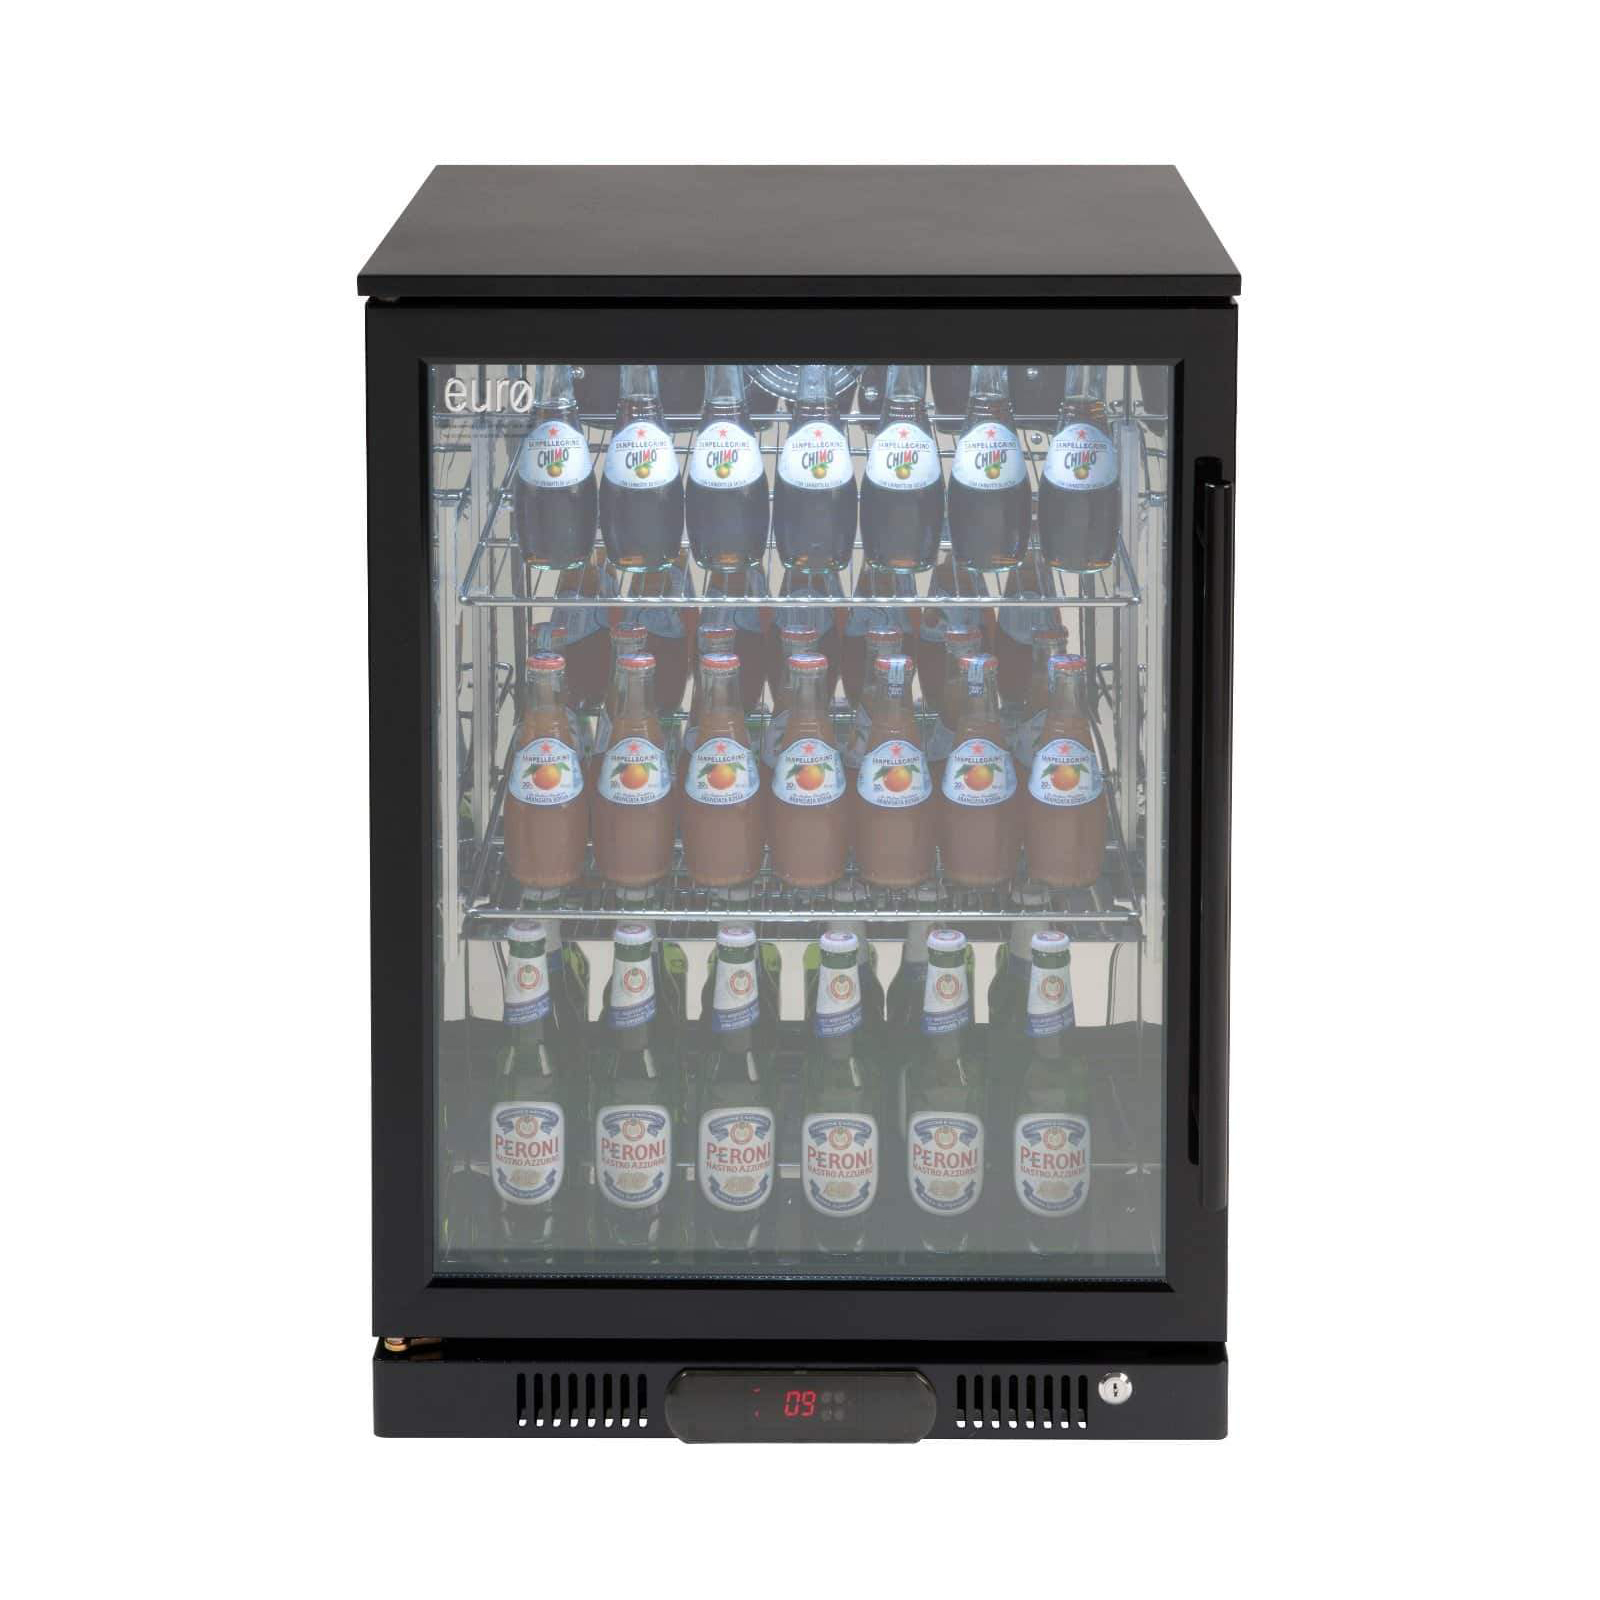 Euro Appliances 138L Single Door Beverage Cooler - EA60WFBR